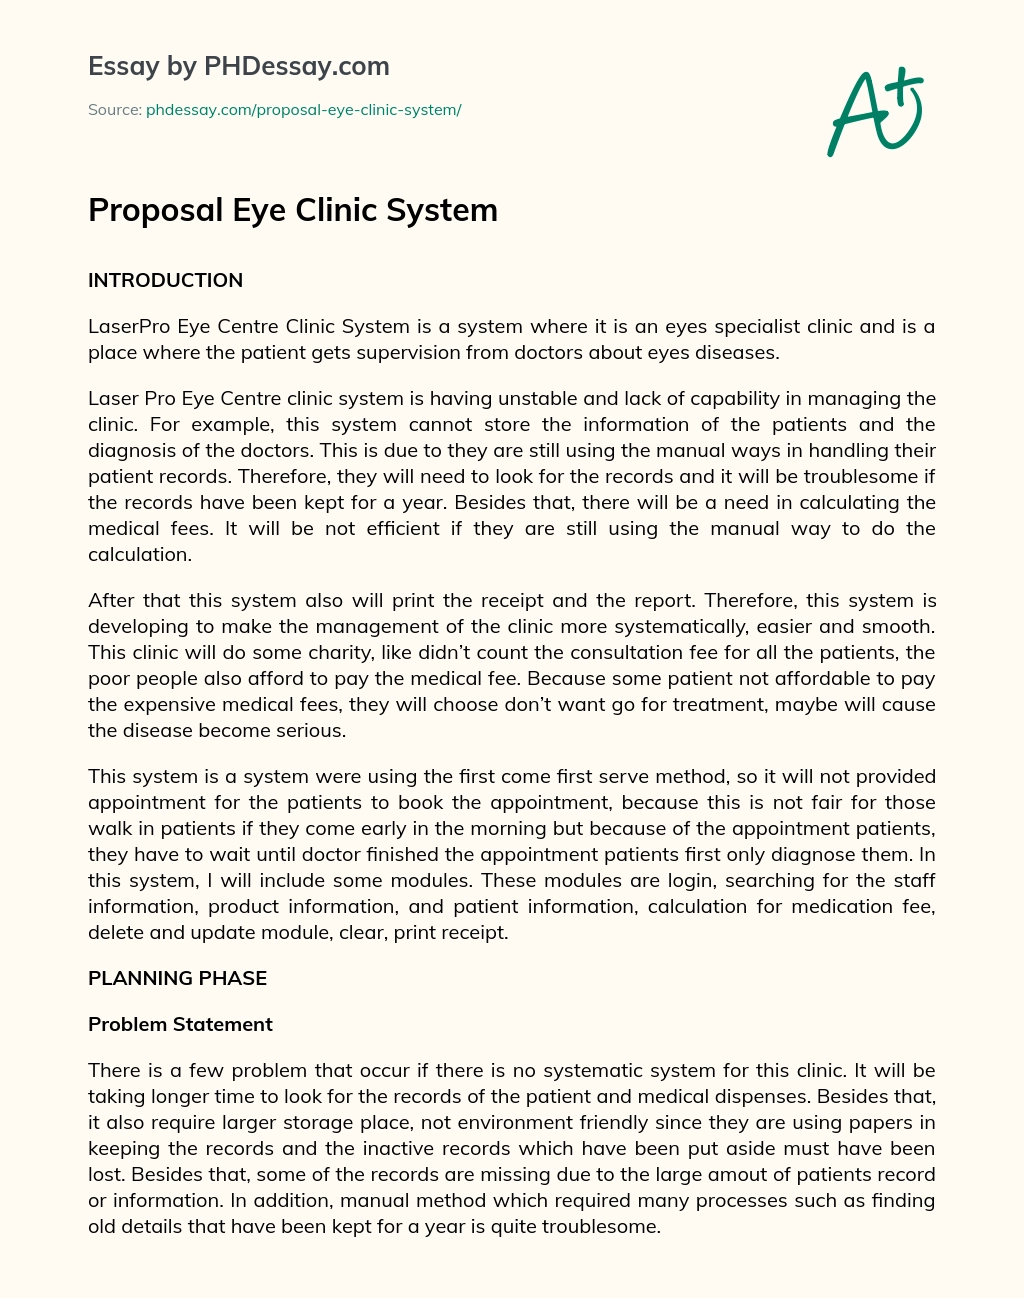 Proposal Eye Clinic System essay